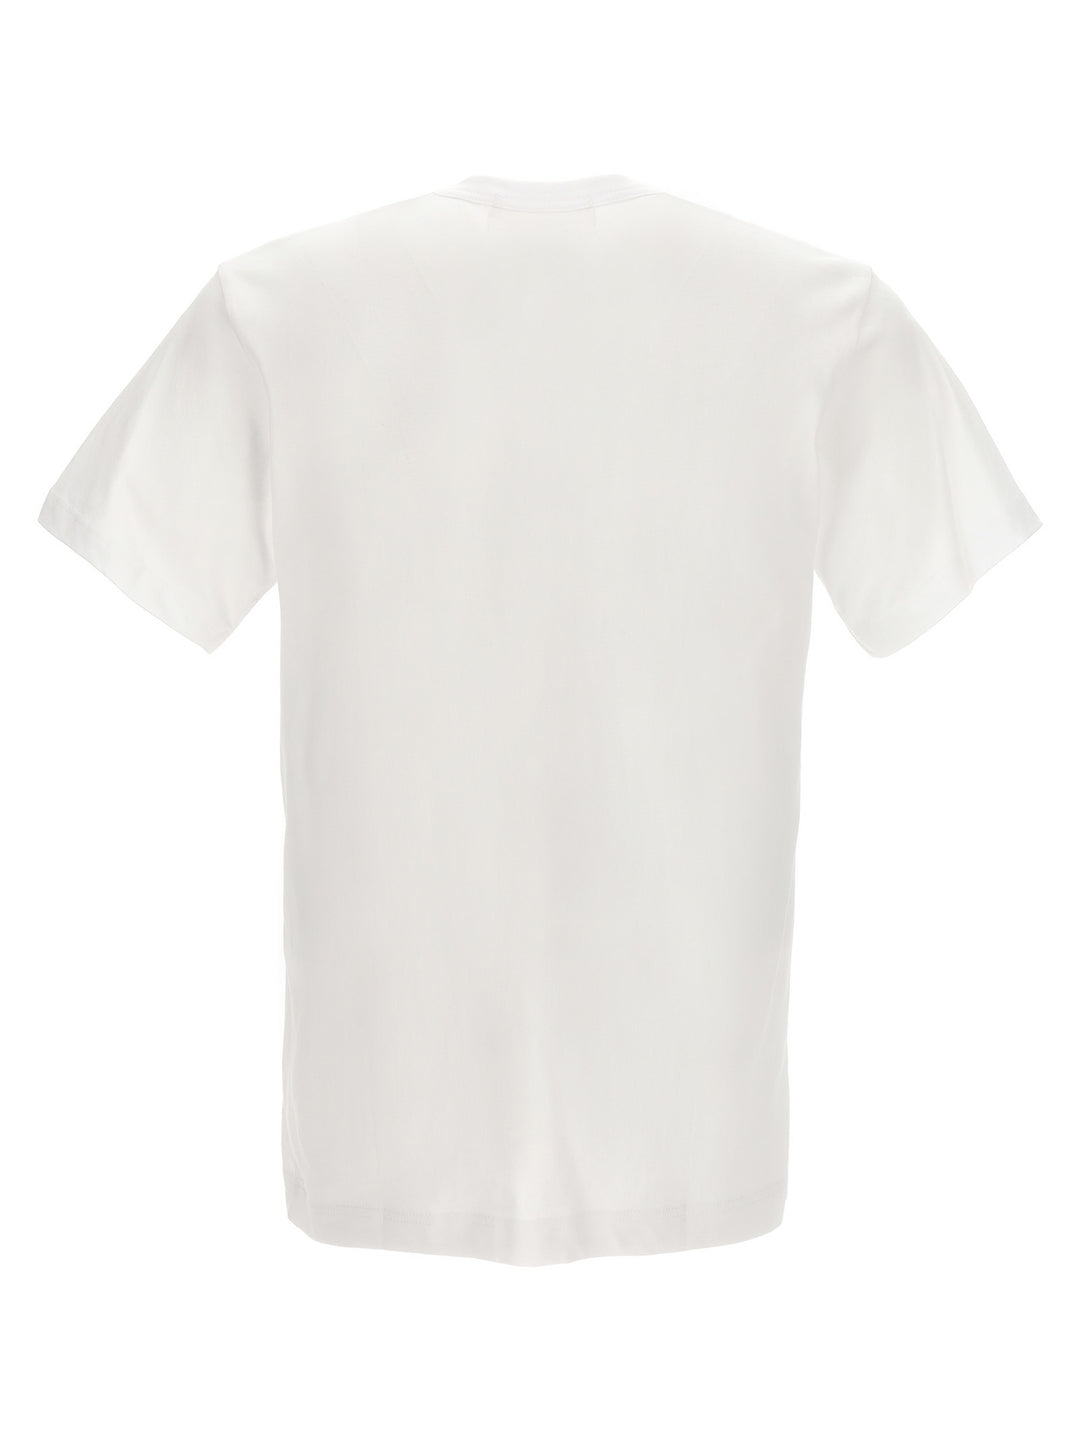 Comme Des GarçOns X Lacoste T Shirt Bianco